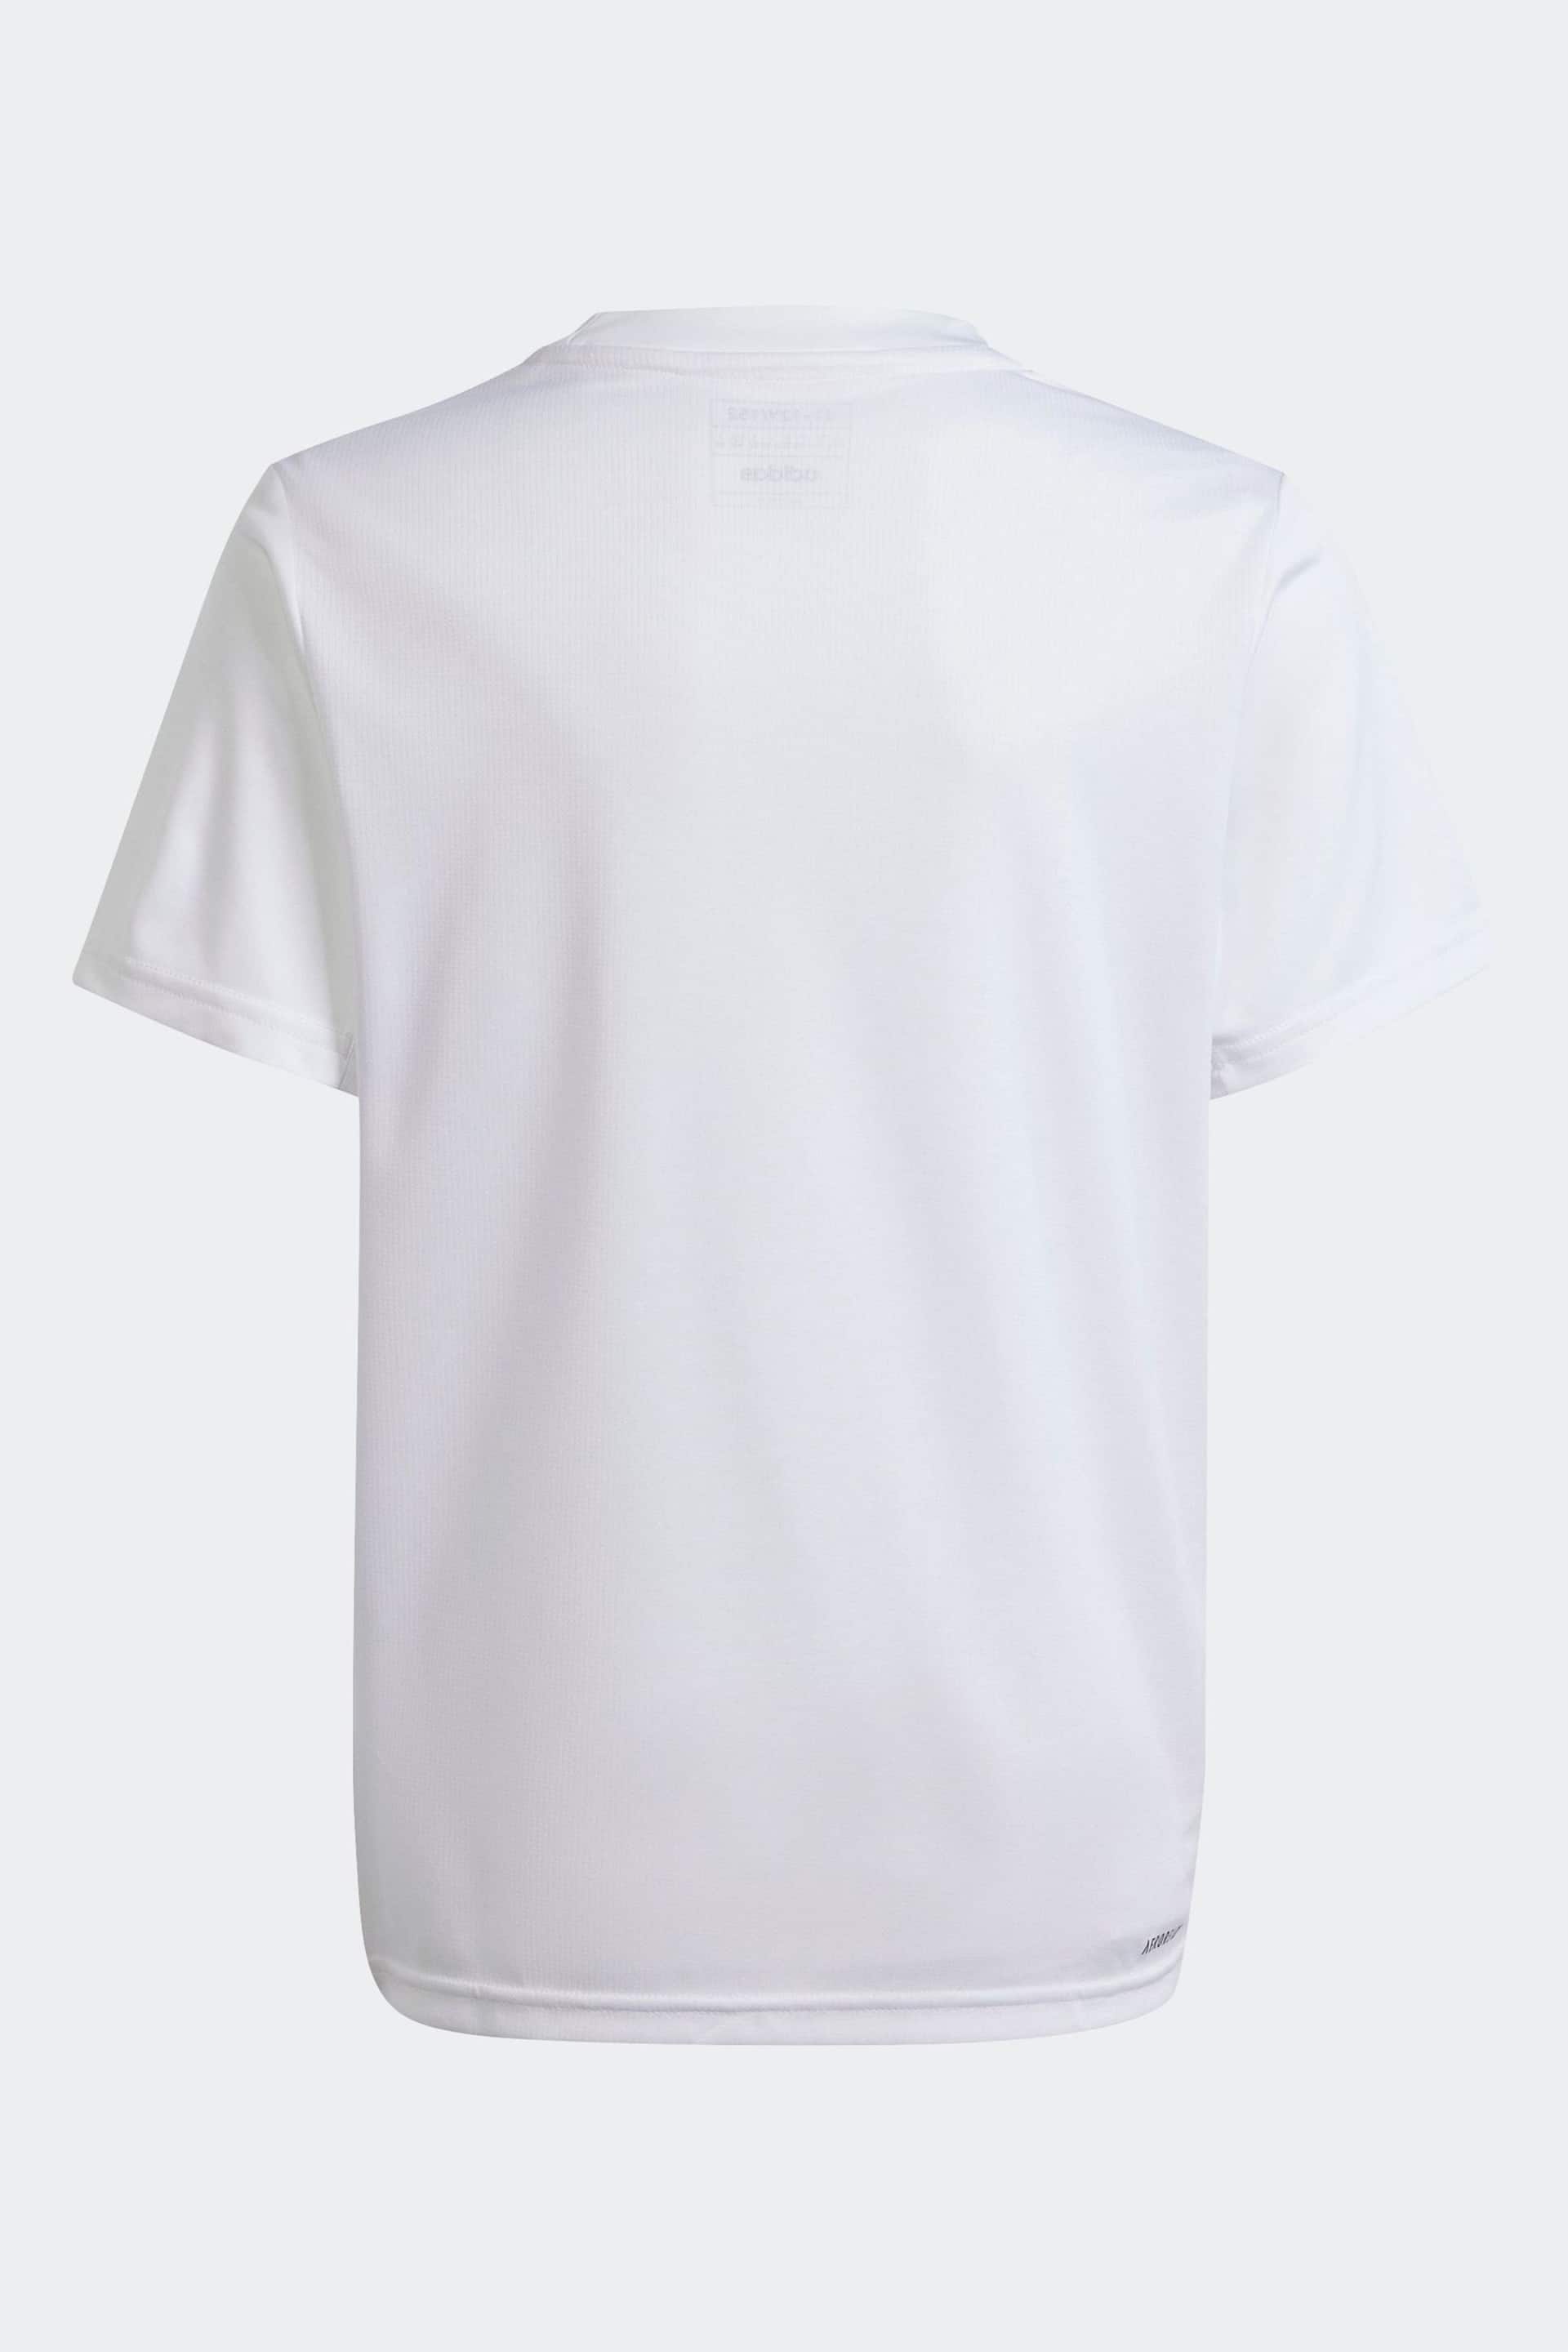 adidas White T-Shirt - Image 2 of 5